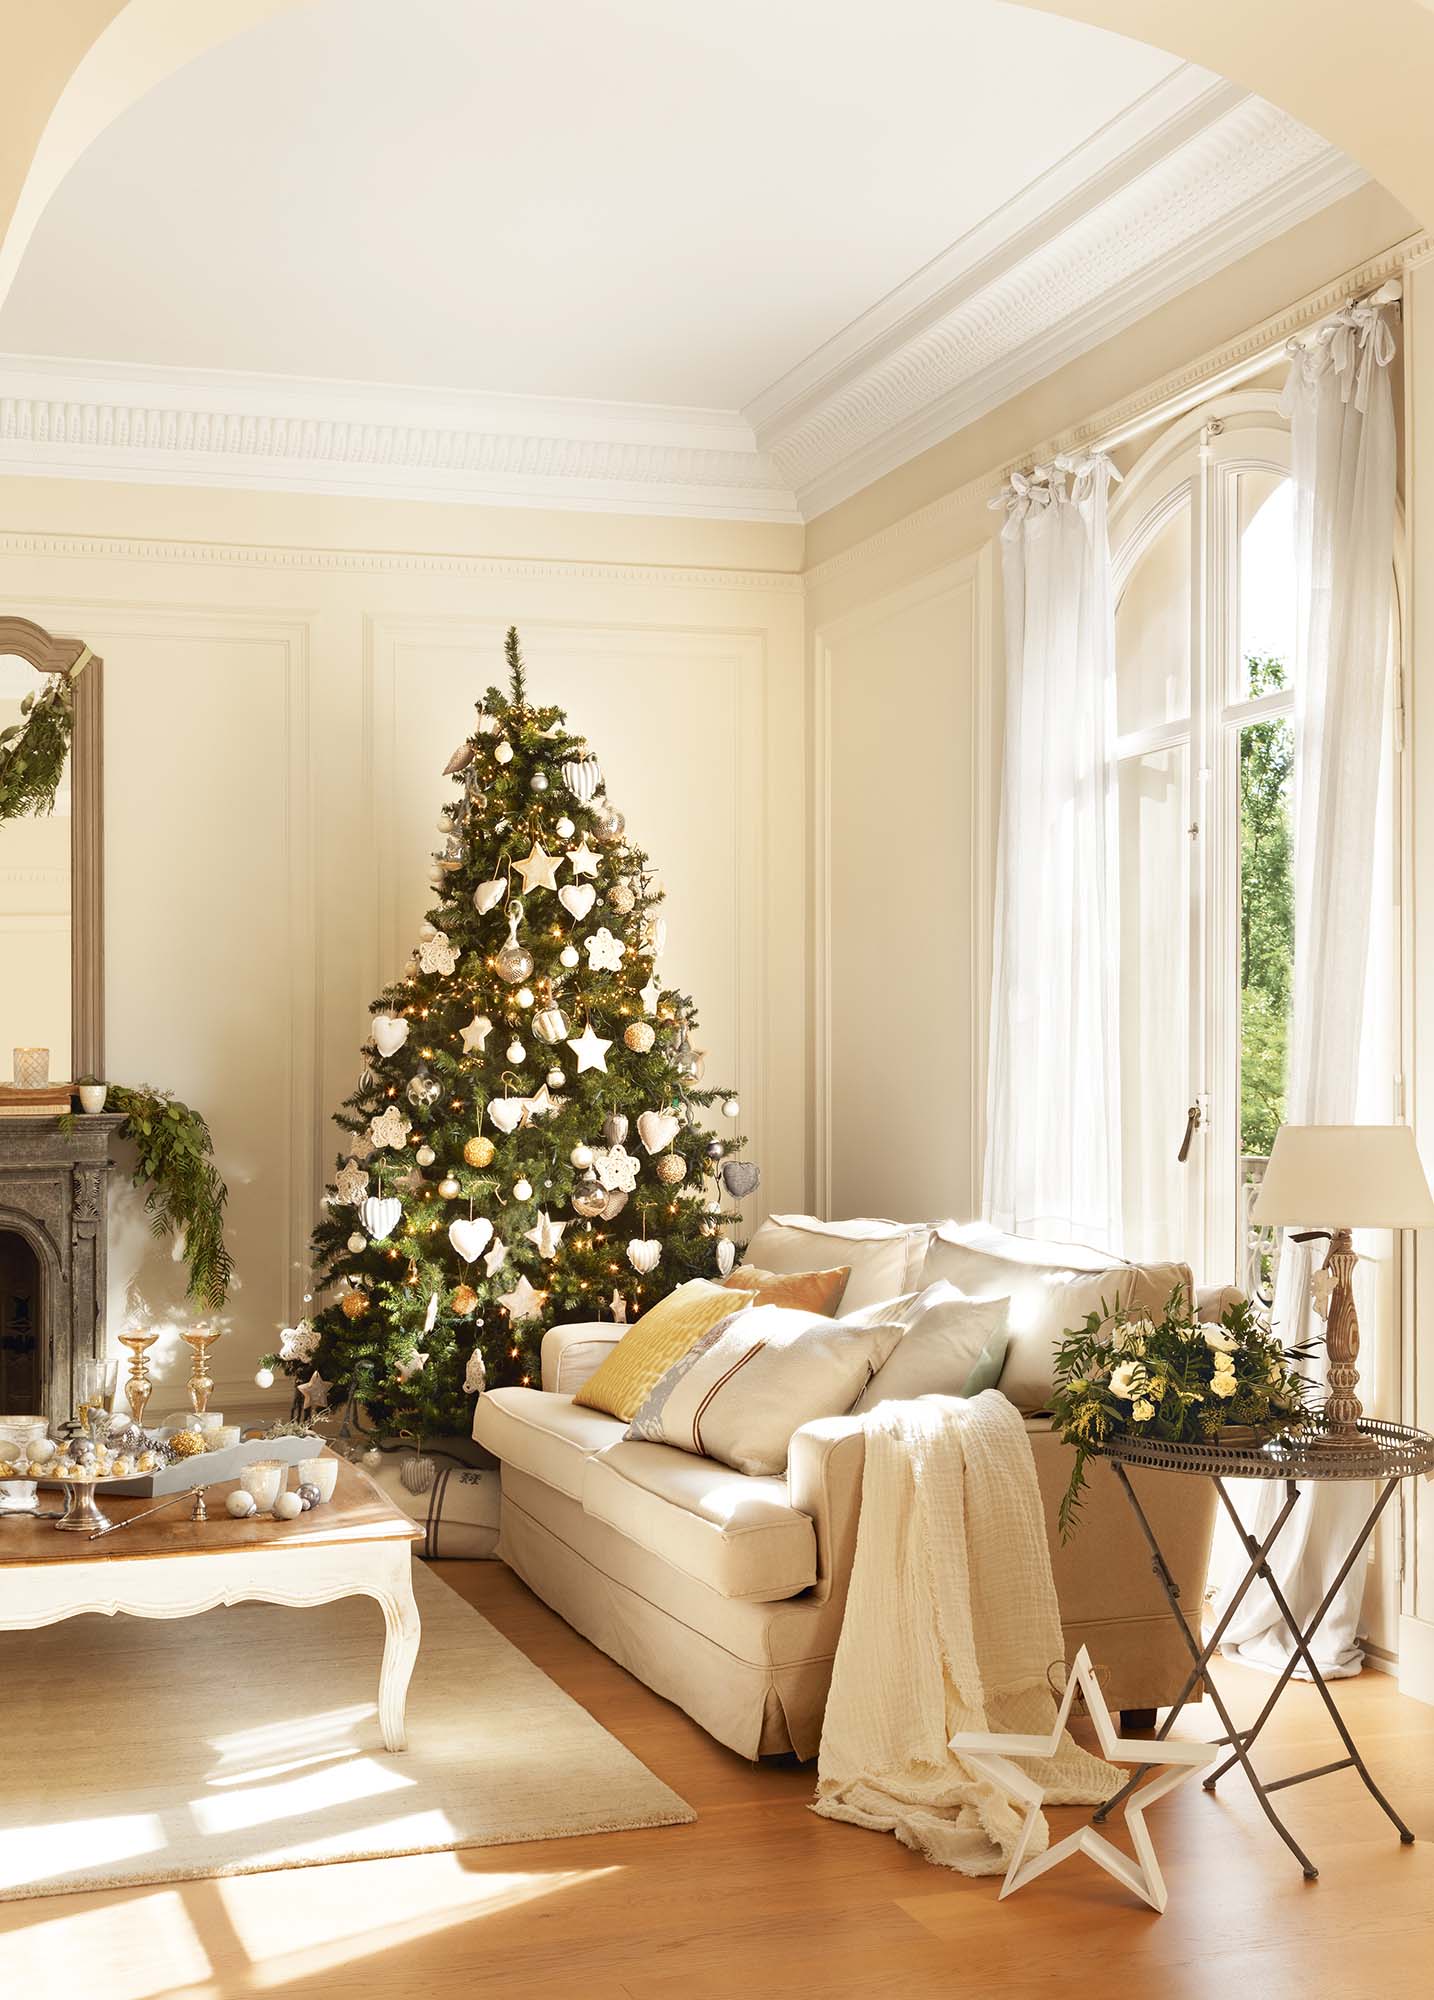 Árbol de navidad con bolas de cristal y madera, adornos de crochet y tela, y otras texturas.